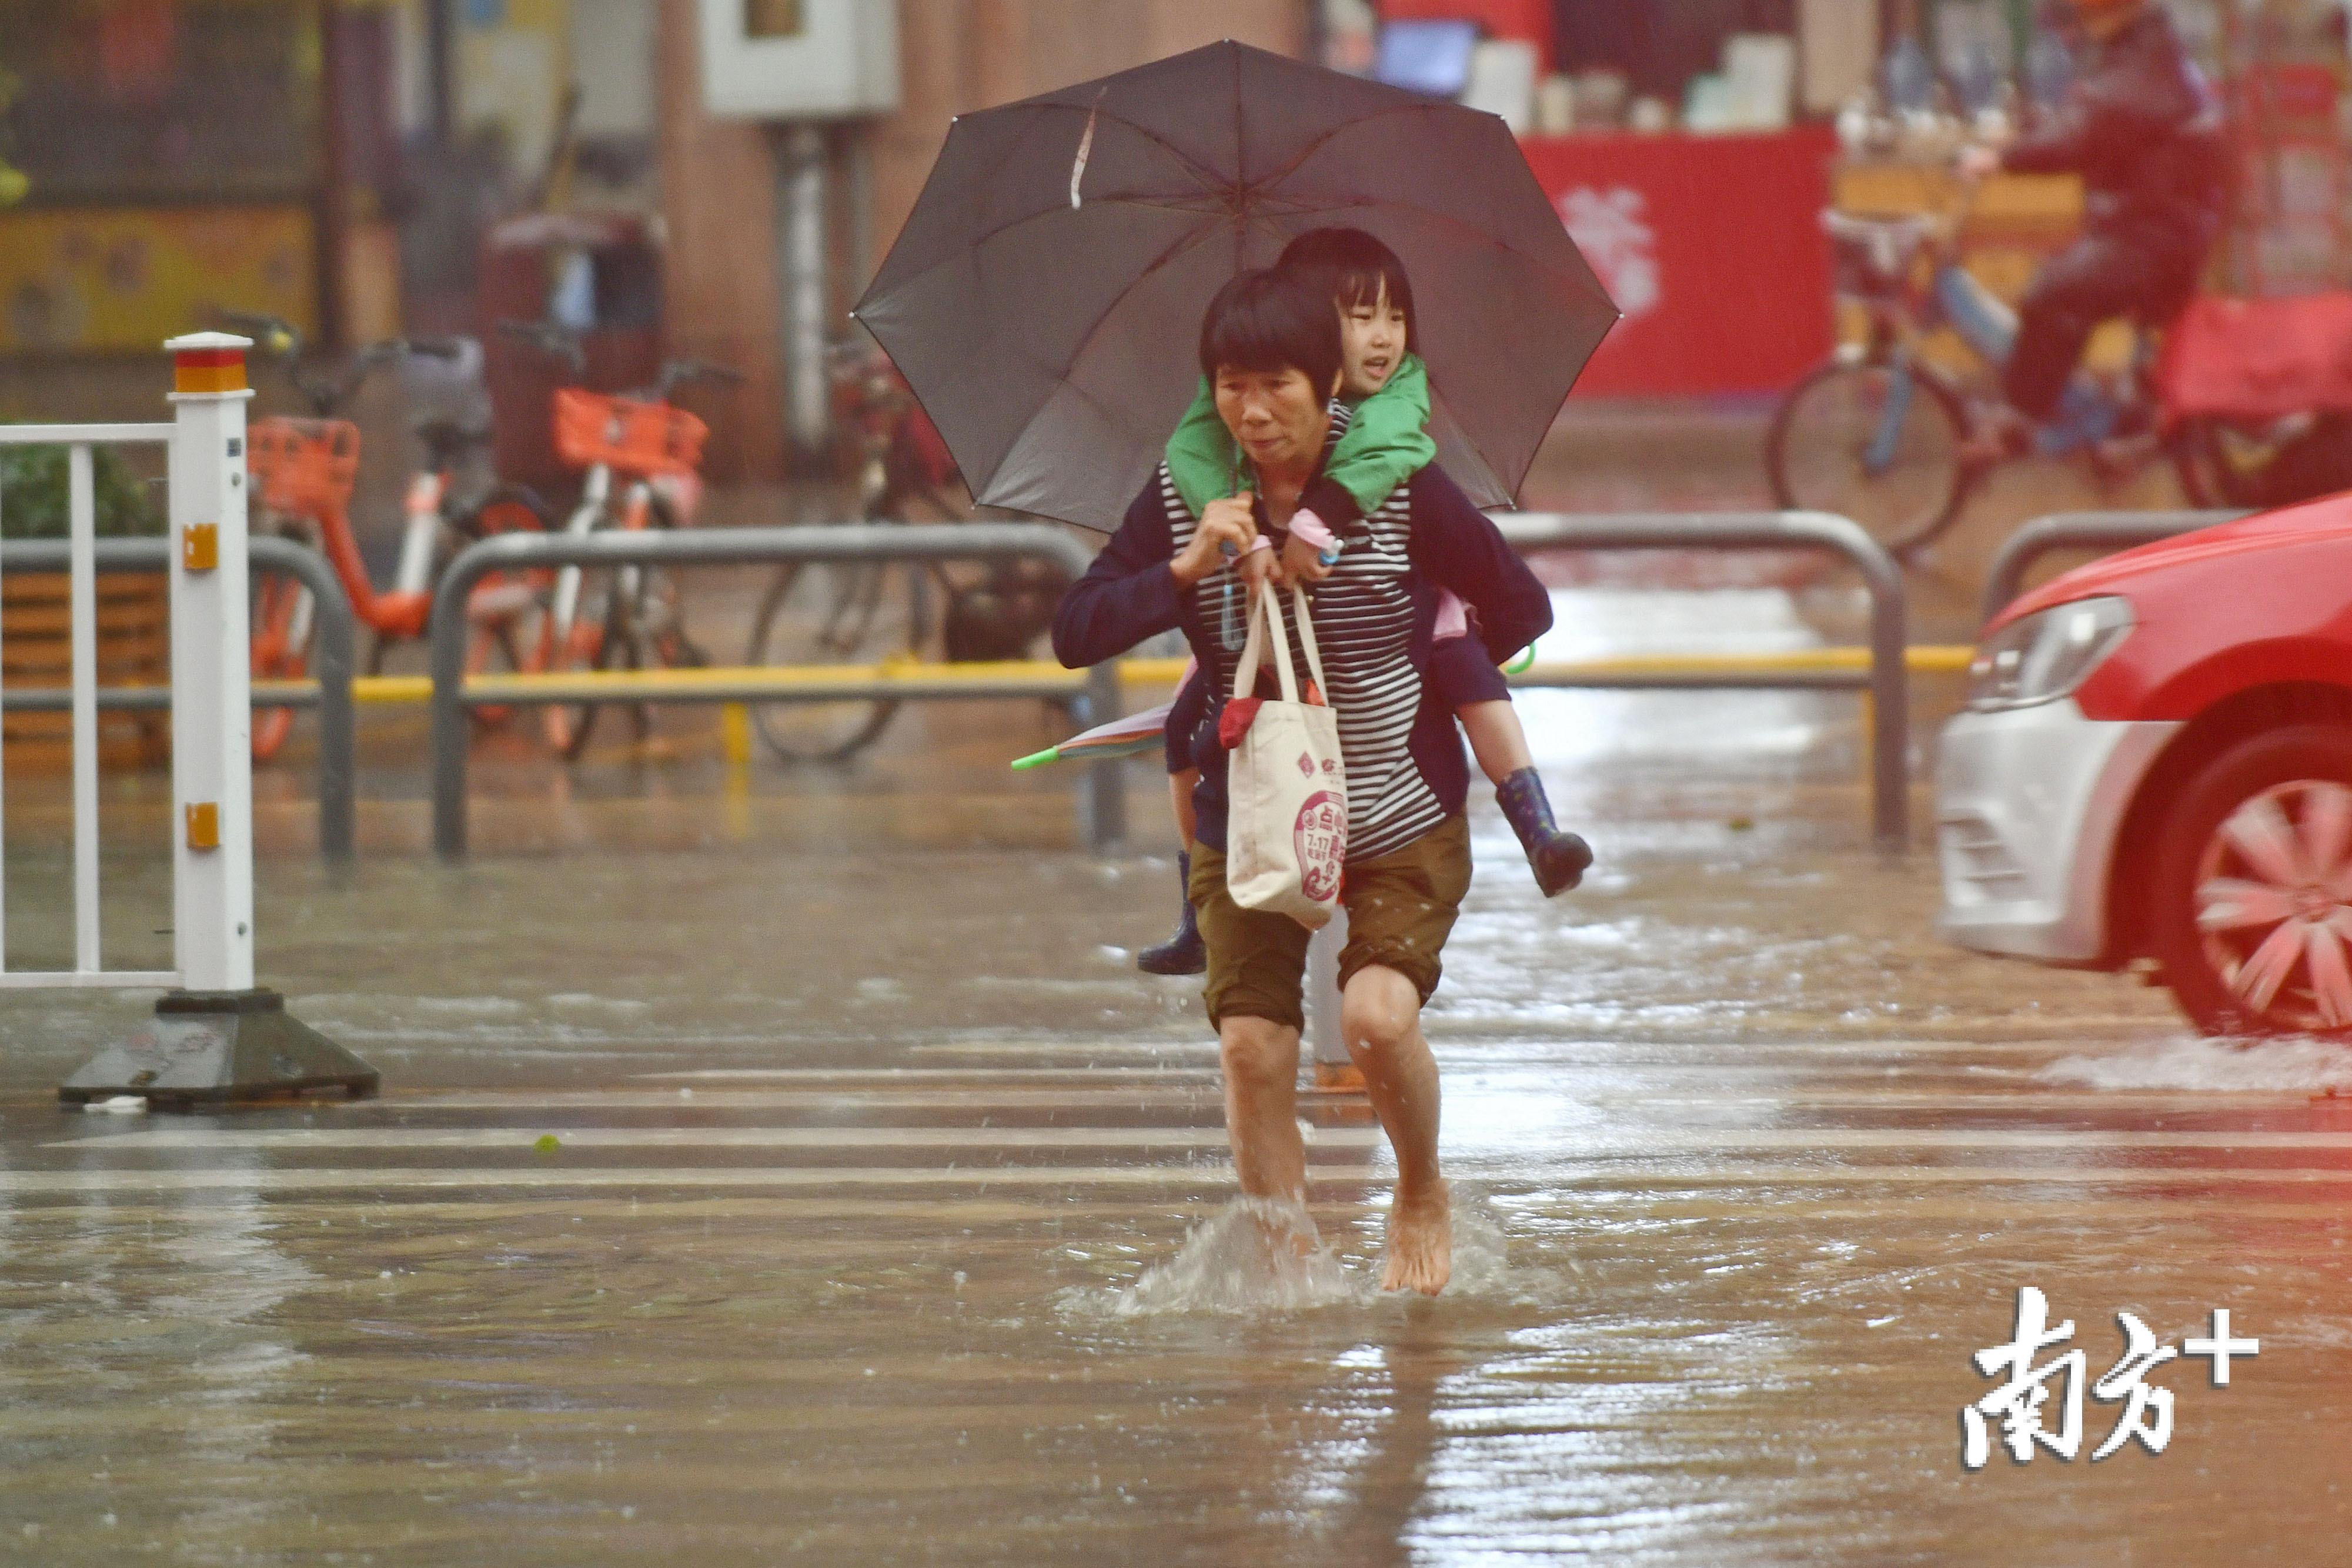 「帕卡」再襲粵 珠海多處水浸超市被搶空 - 澳門力報官網